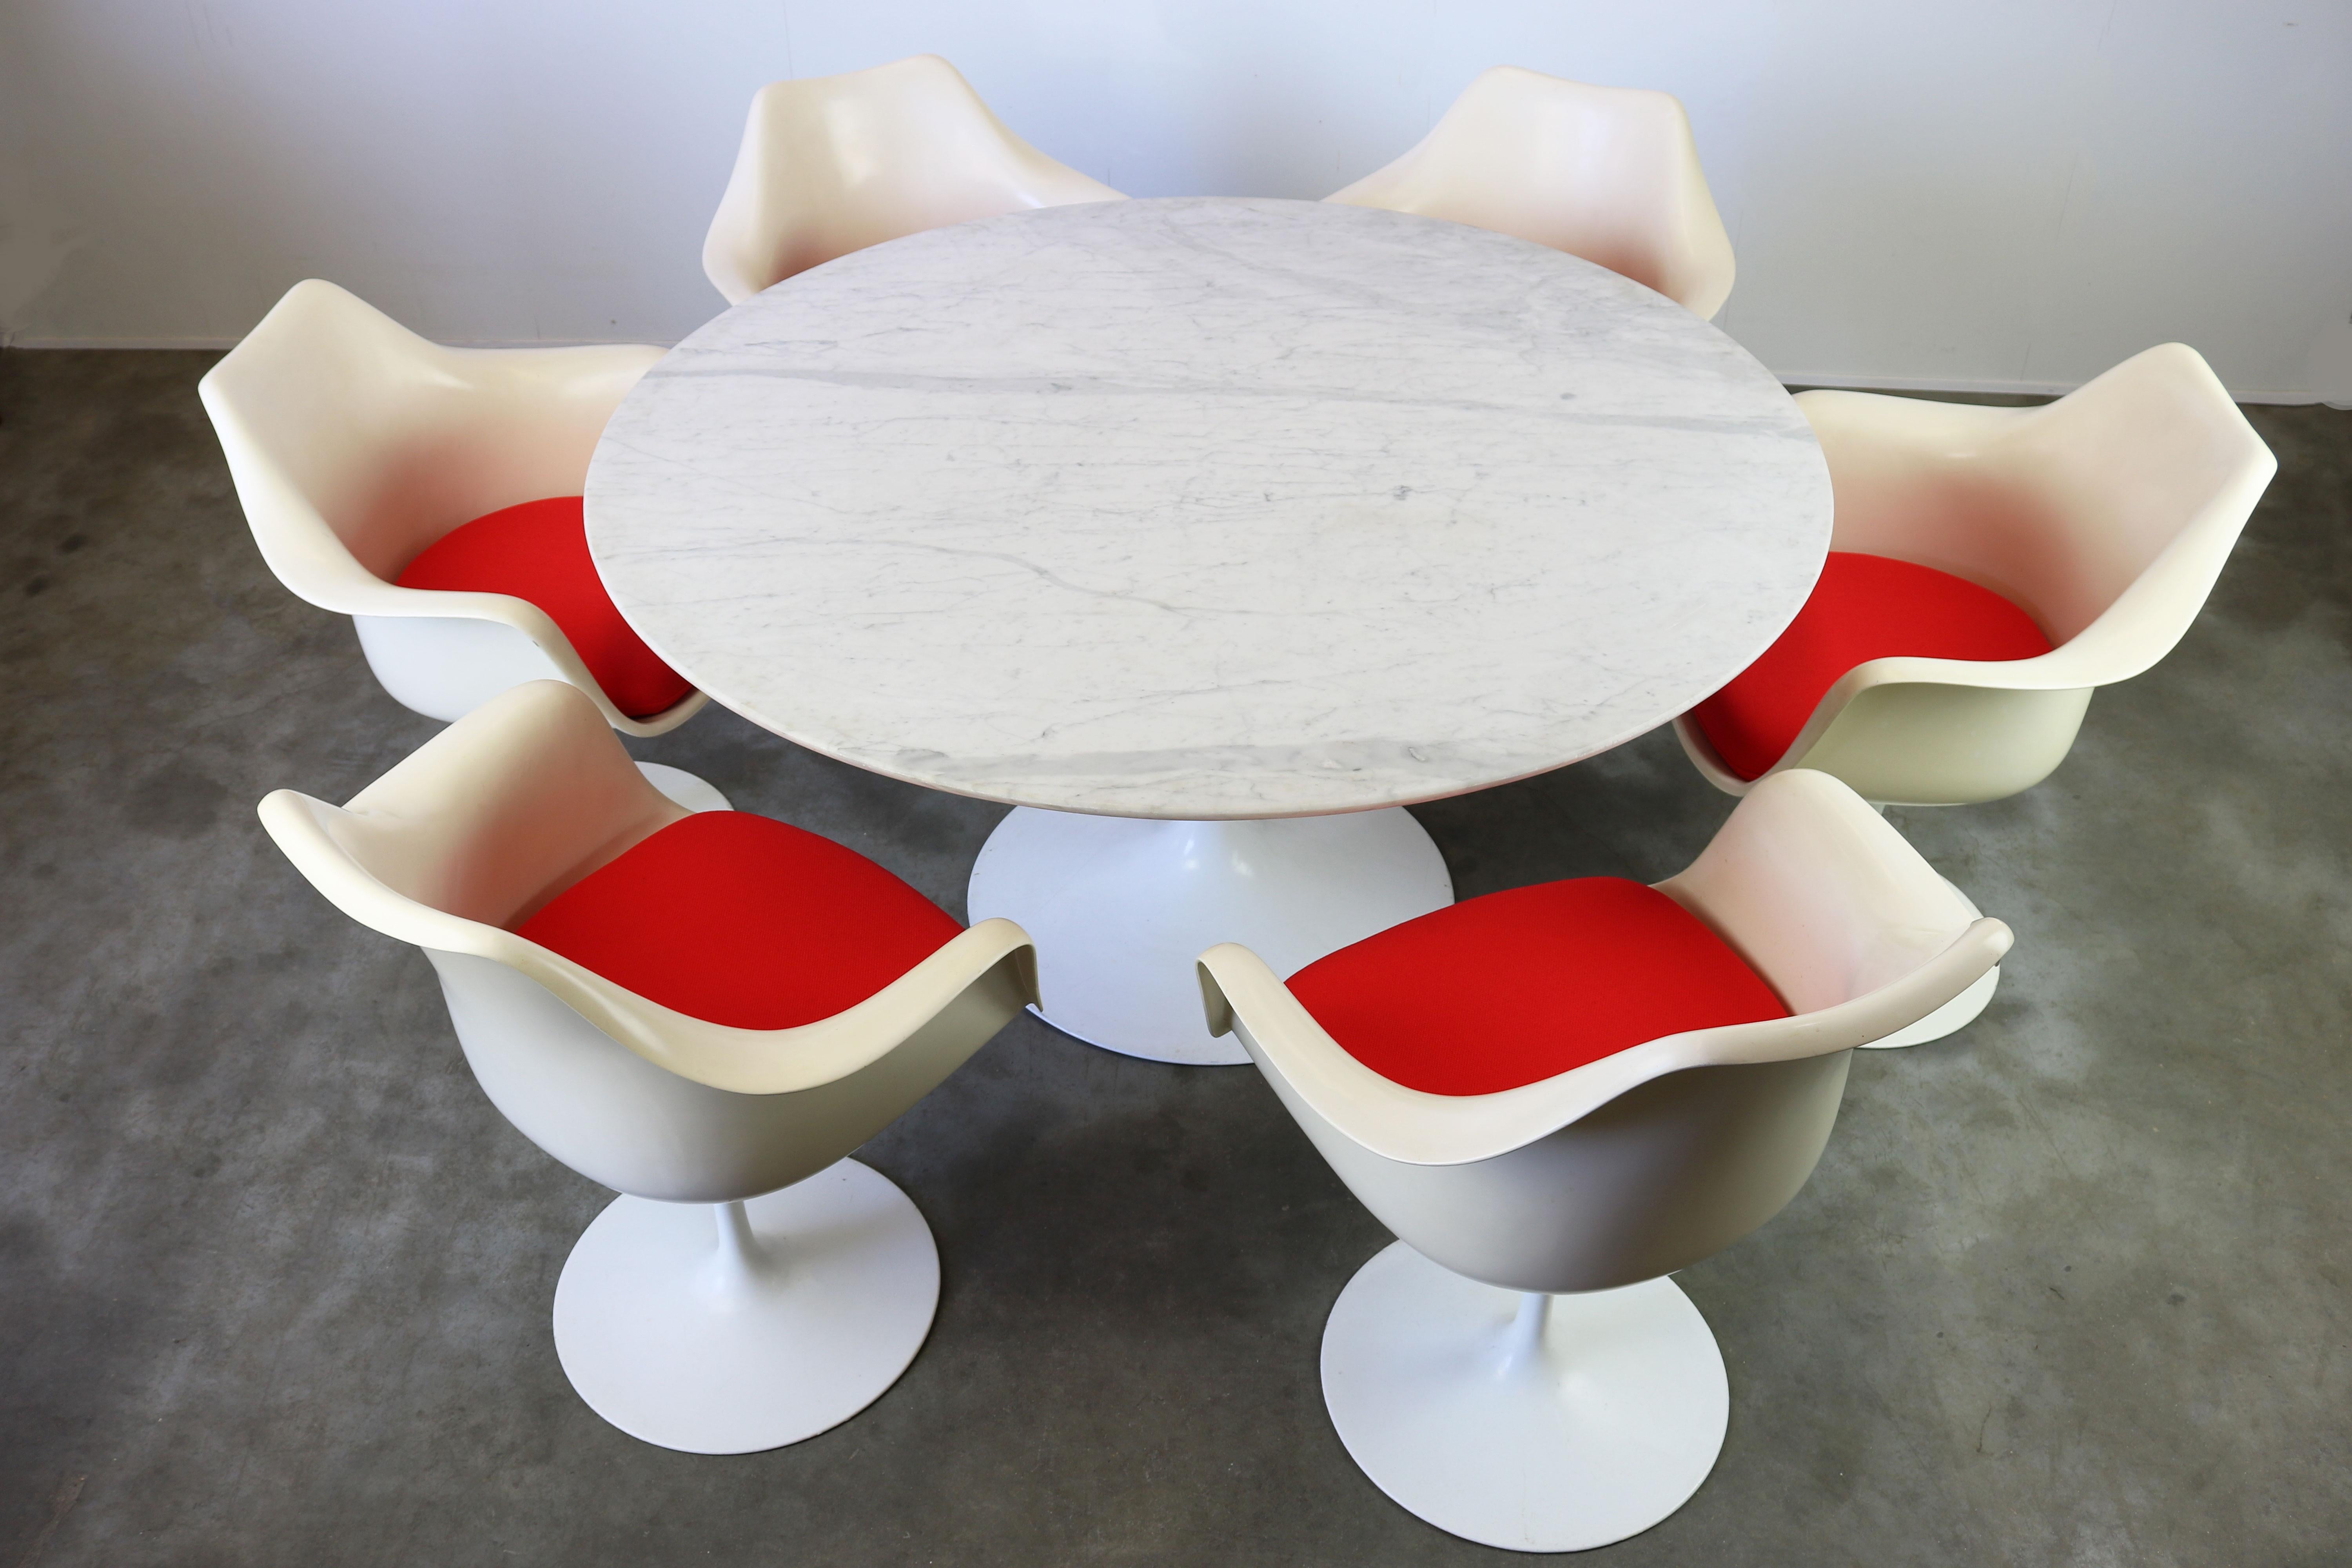 Prächtiges, vollständig originales Tulpen-Essgeschirr, entworfen von Eero Saarinen und hergestellt von Knoll International in den 1960er Jahren. Das Set besteht aus 6 original markierten Tulpensesseln und dem dazu passenden runden Marmortisch, die